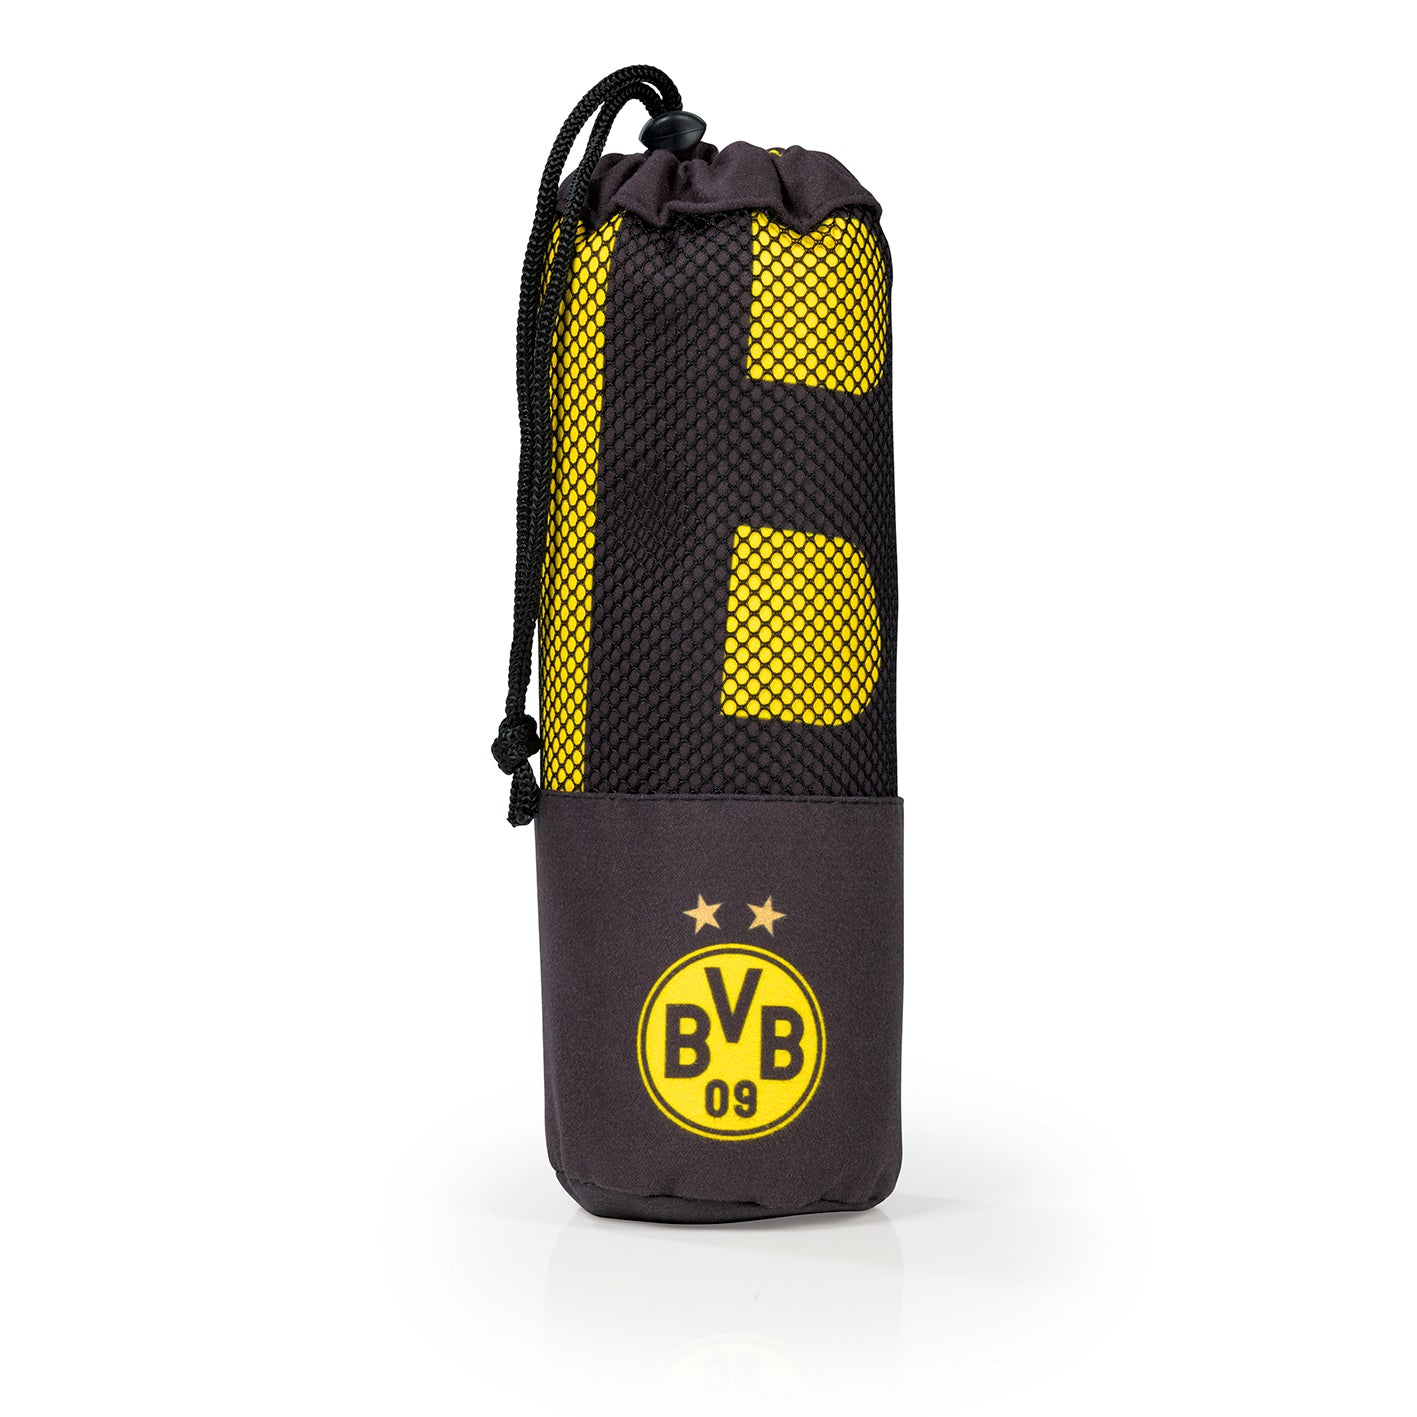 Sporthandtuch Deluxe - 80x130 cm - schwarz/gelb